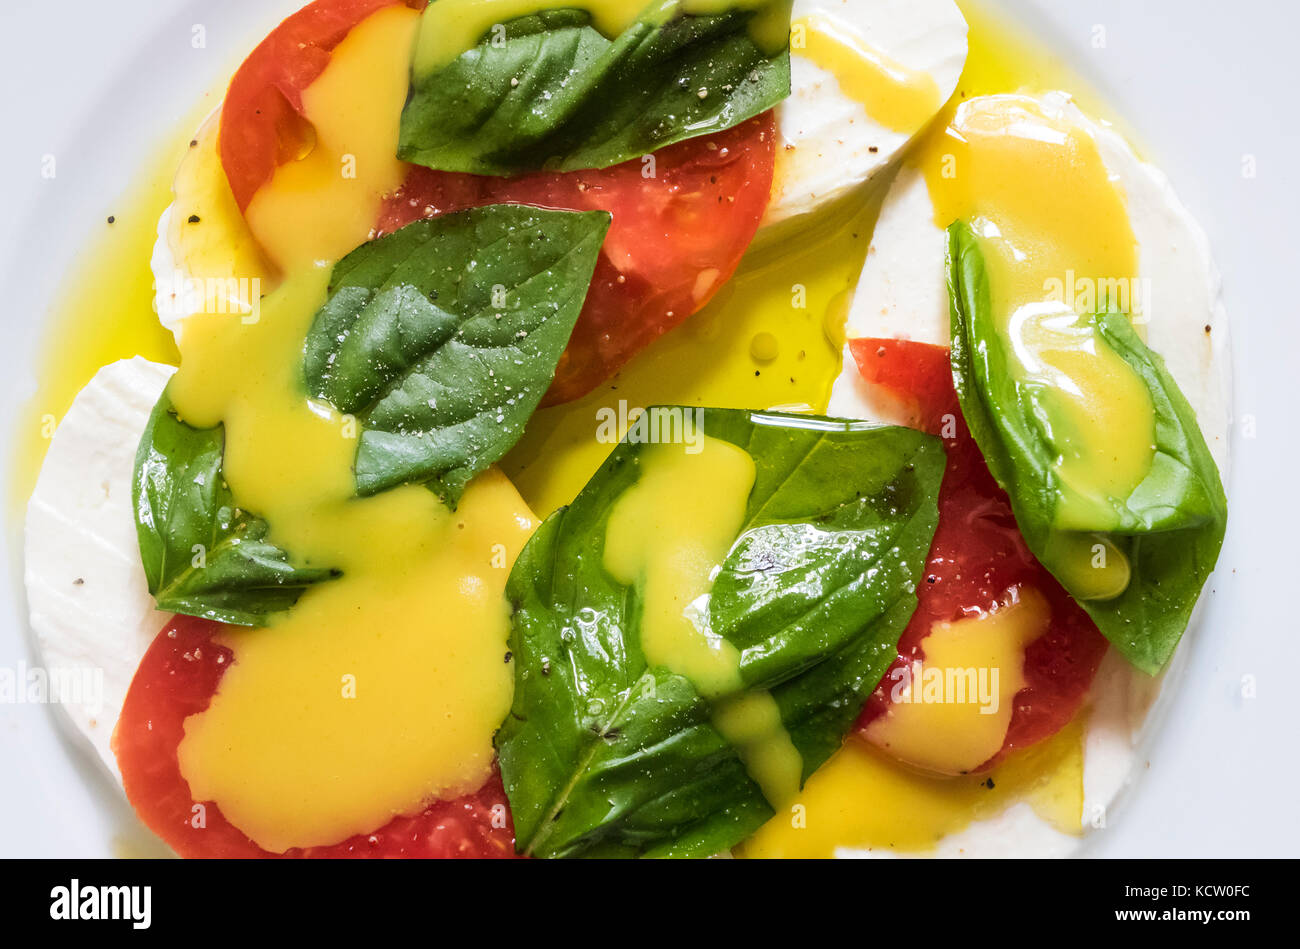 Libre d'une salade caprese : mozzarella, tomate, basilic frais et vinaigrette moutarde au miel Banque D'Images